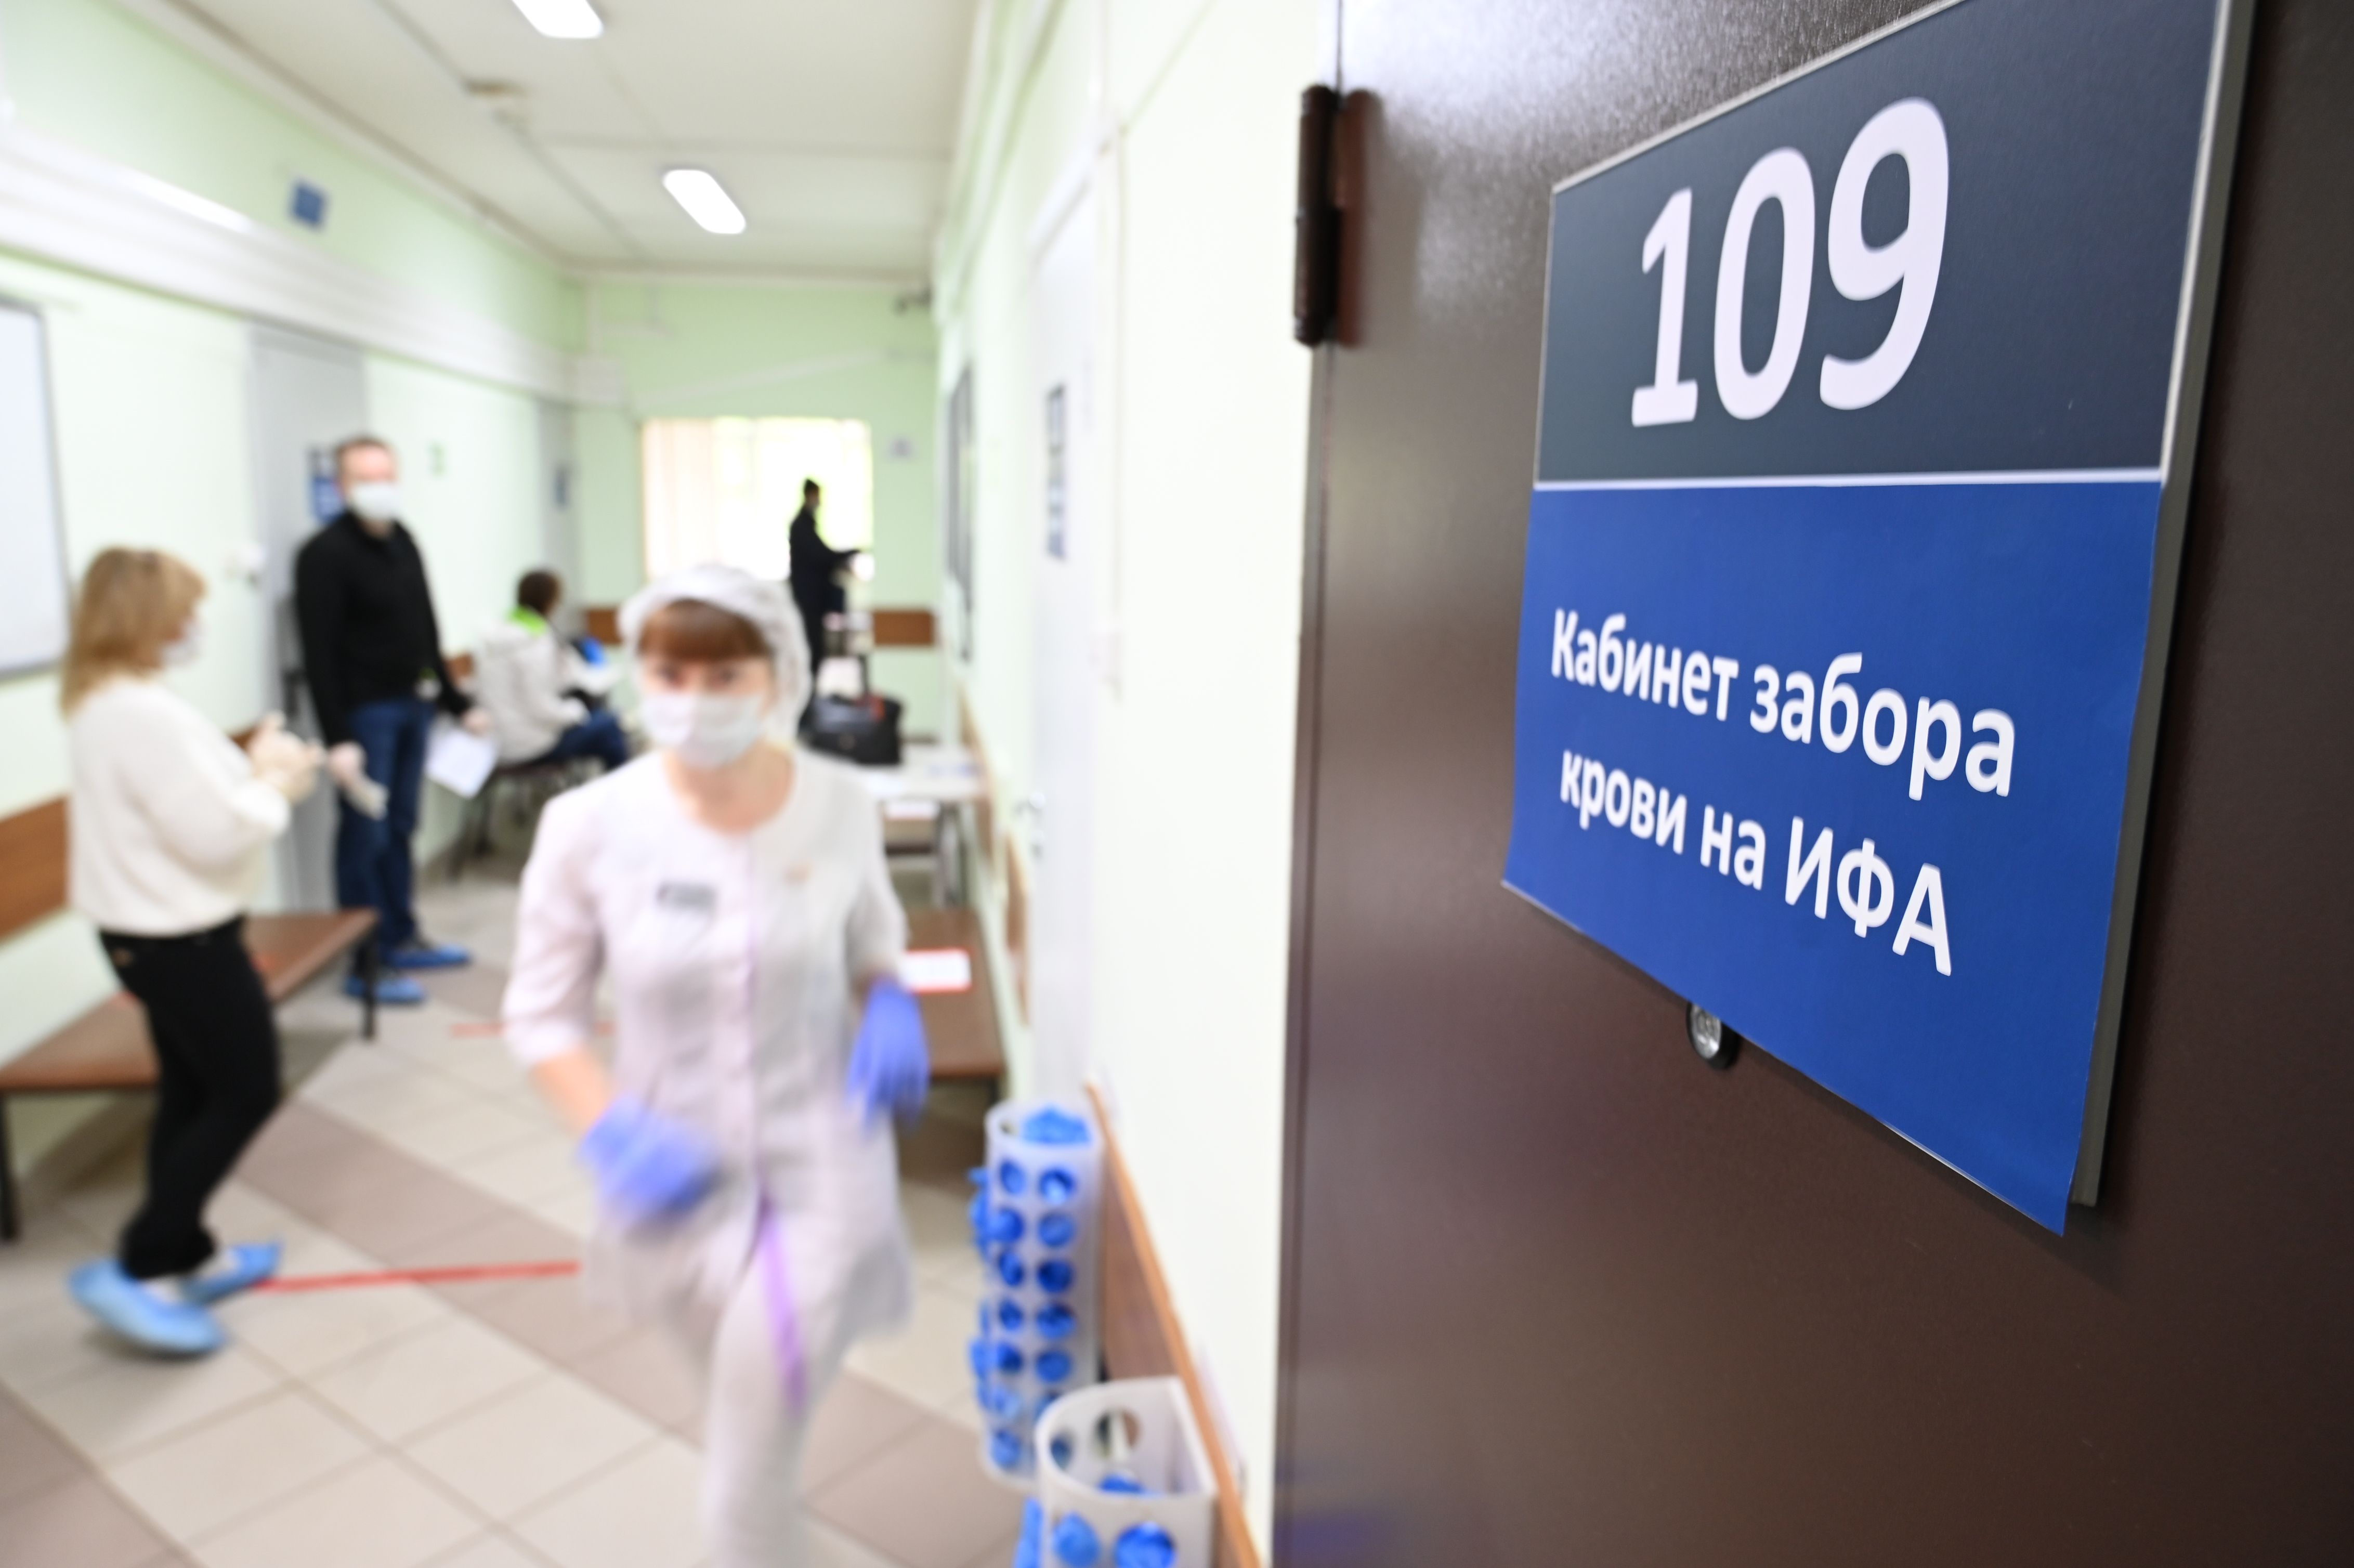 Иммунитет к коронавирусу нашли у 12% обследованных на антитела москвичей